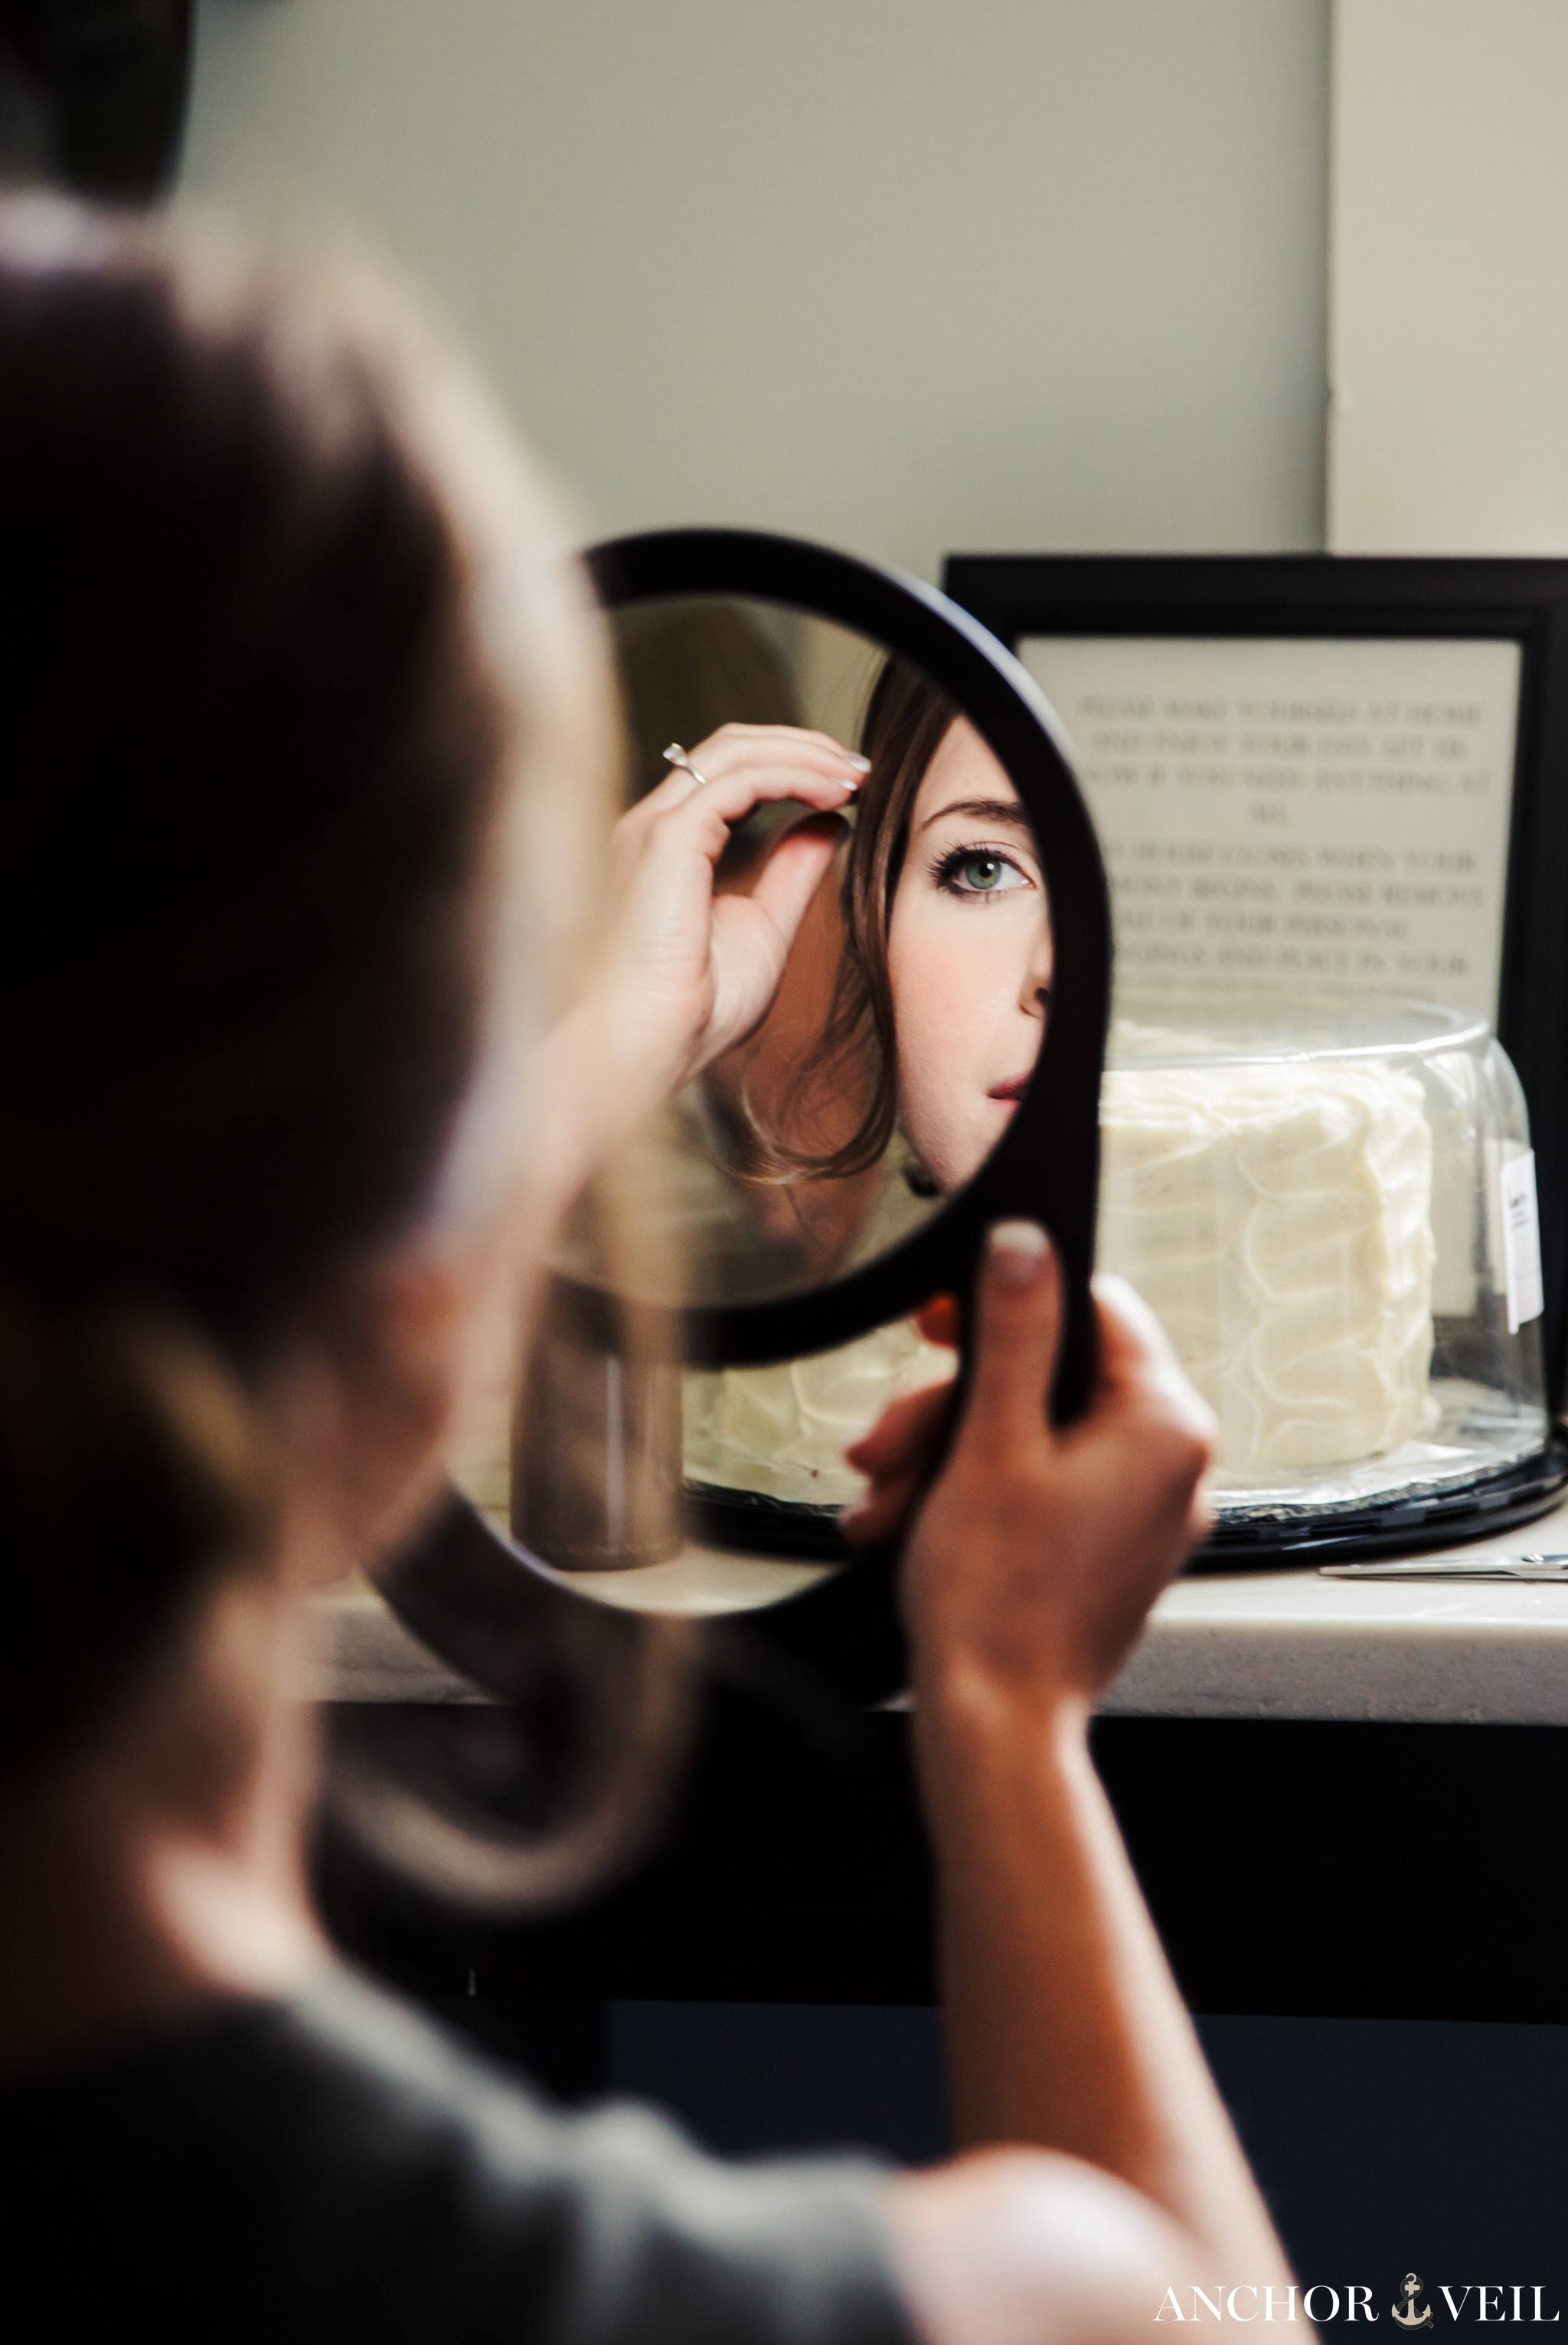 bride's eye through the mirror